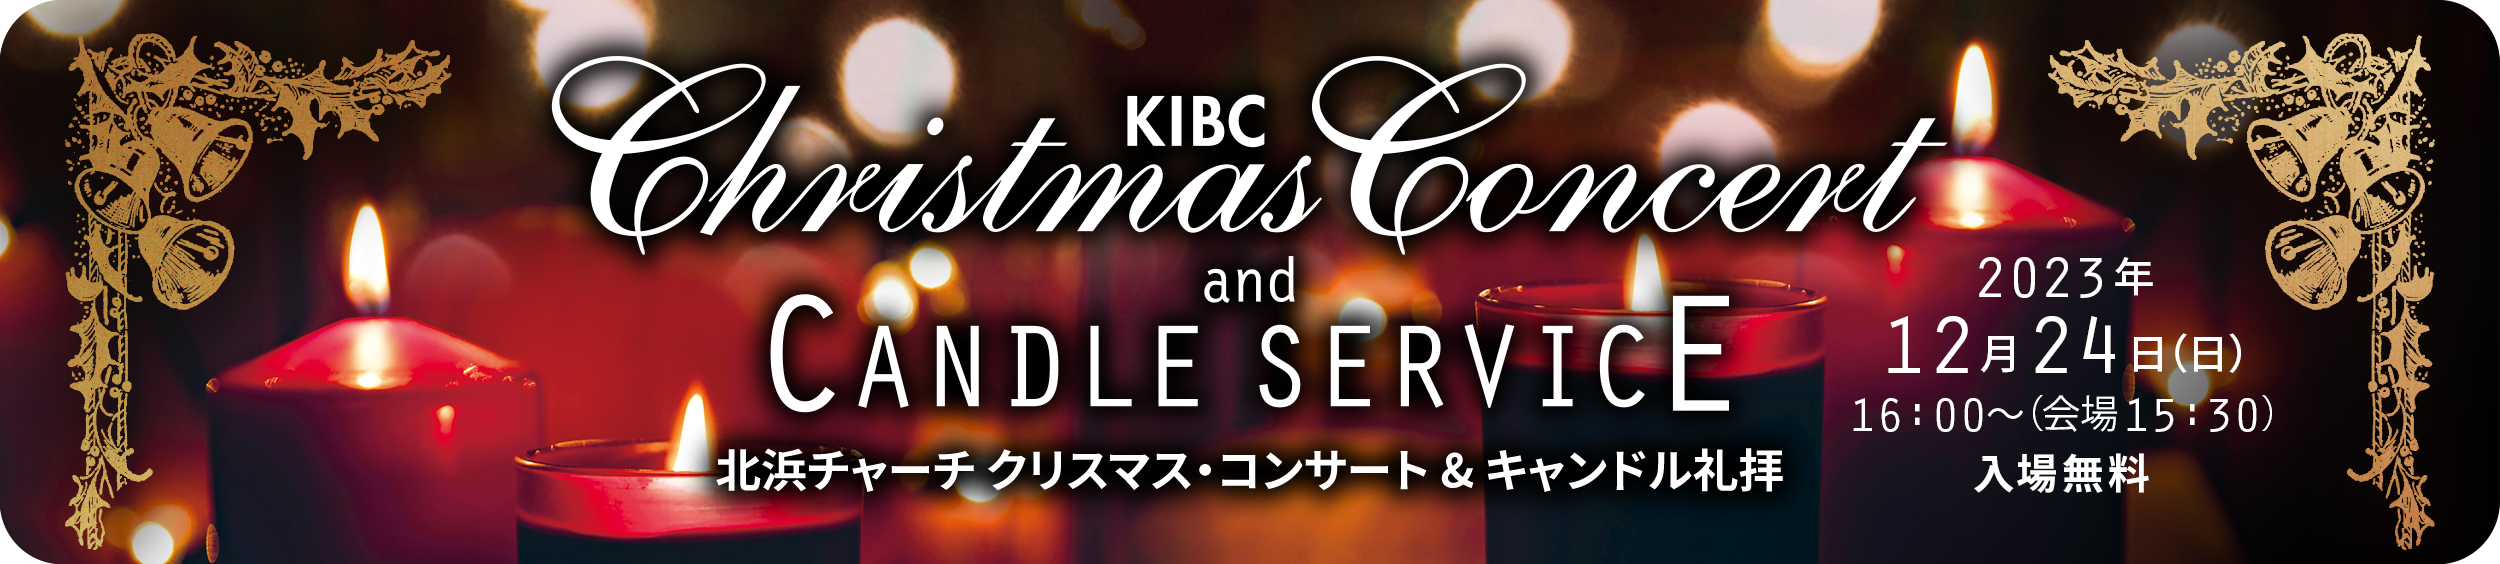 KIBBCクリスマス・コンサートandキャンドル礼拝